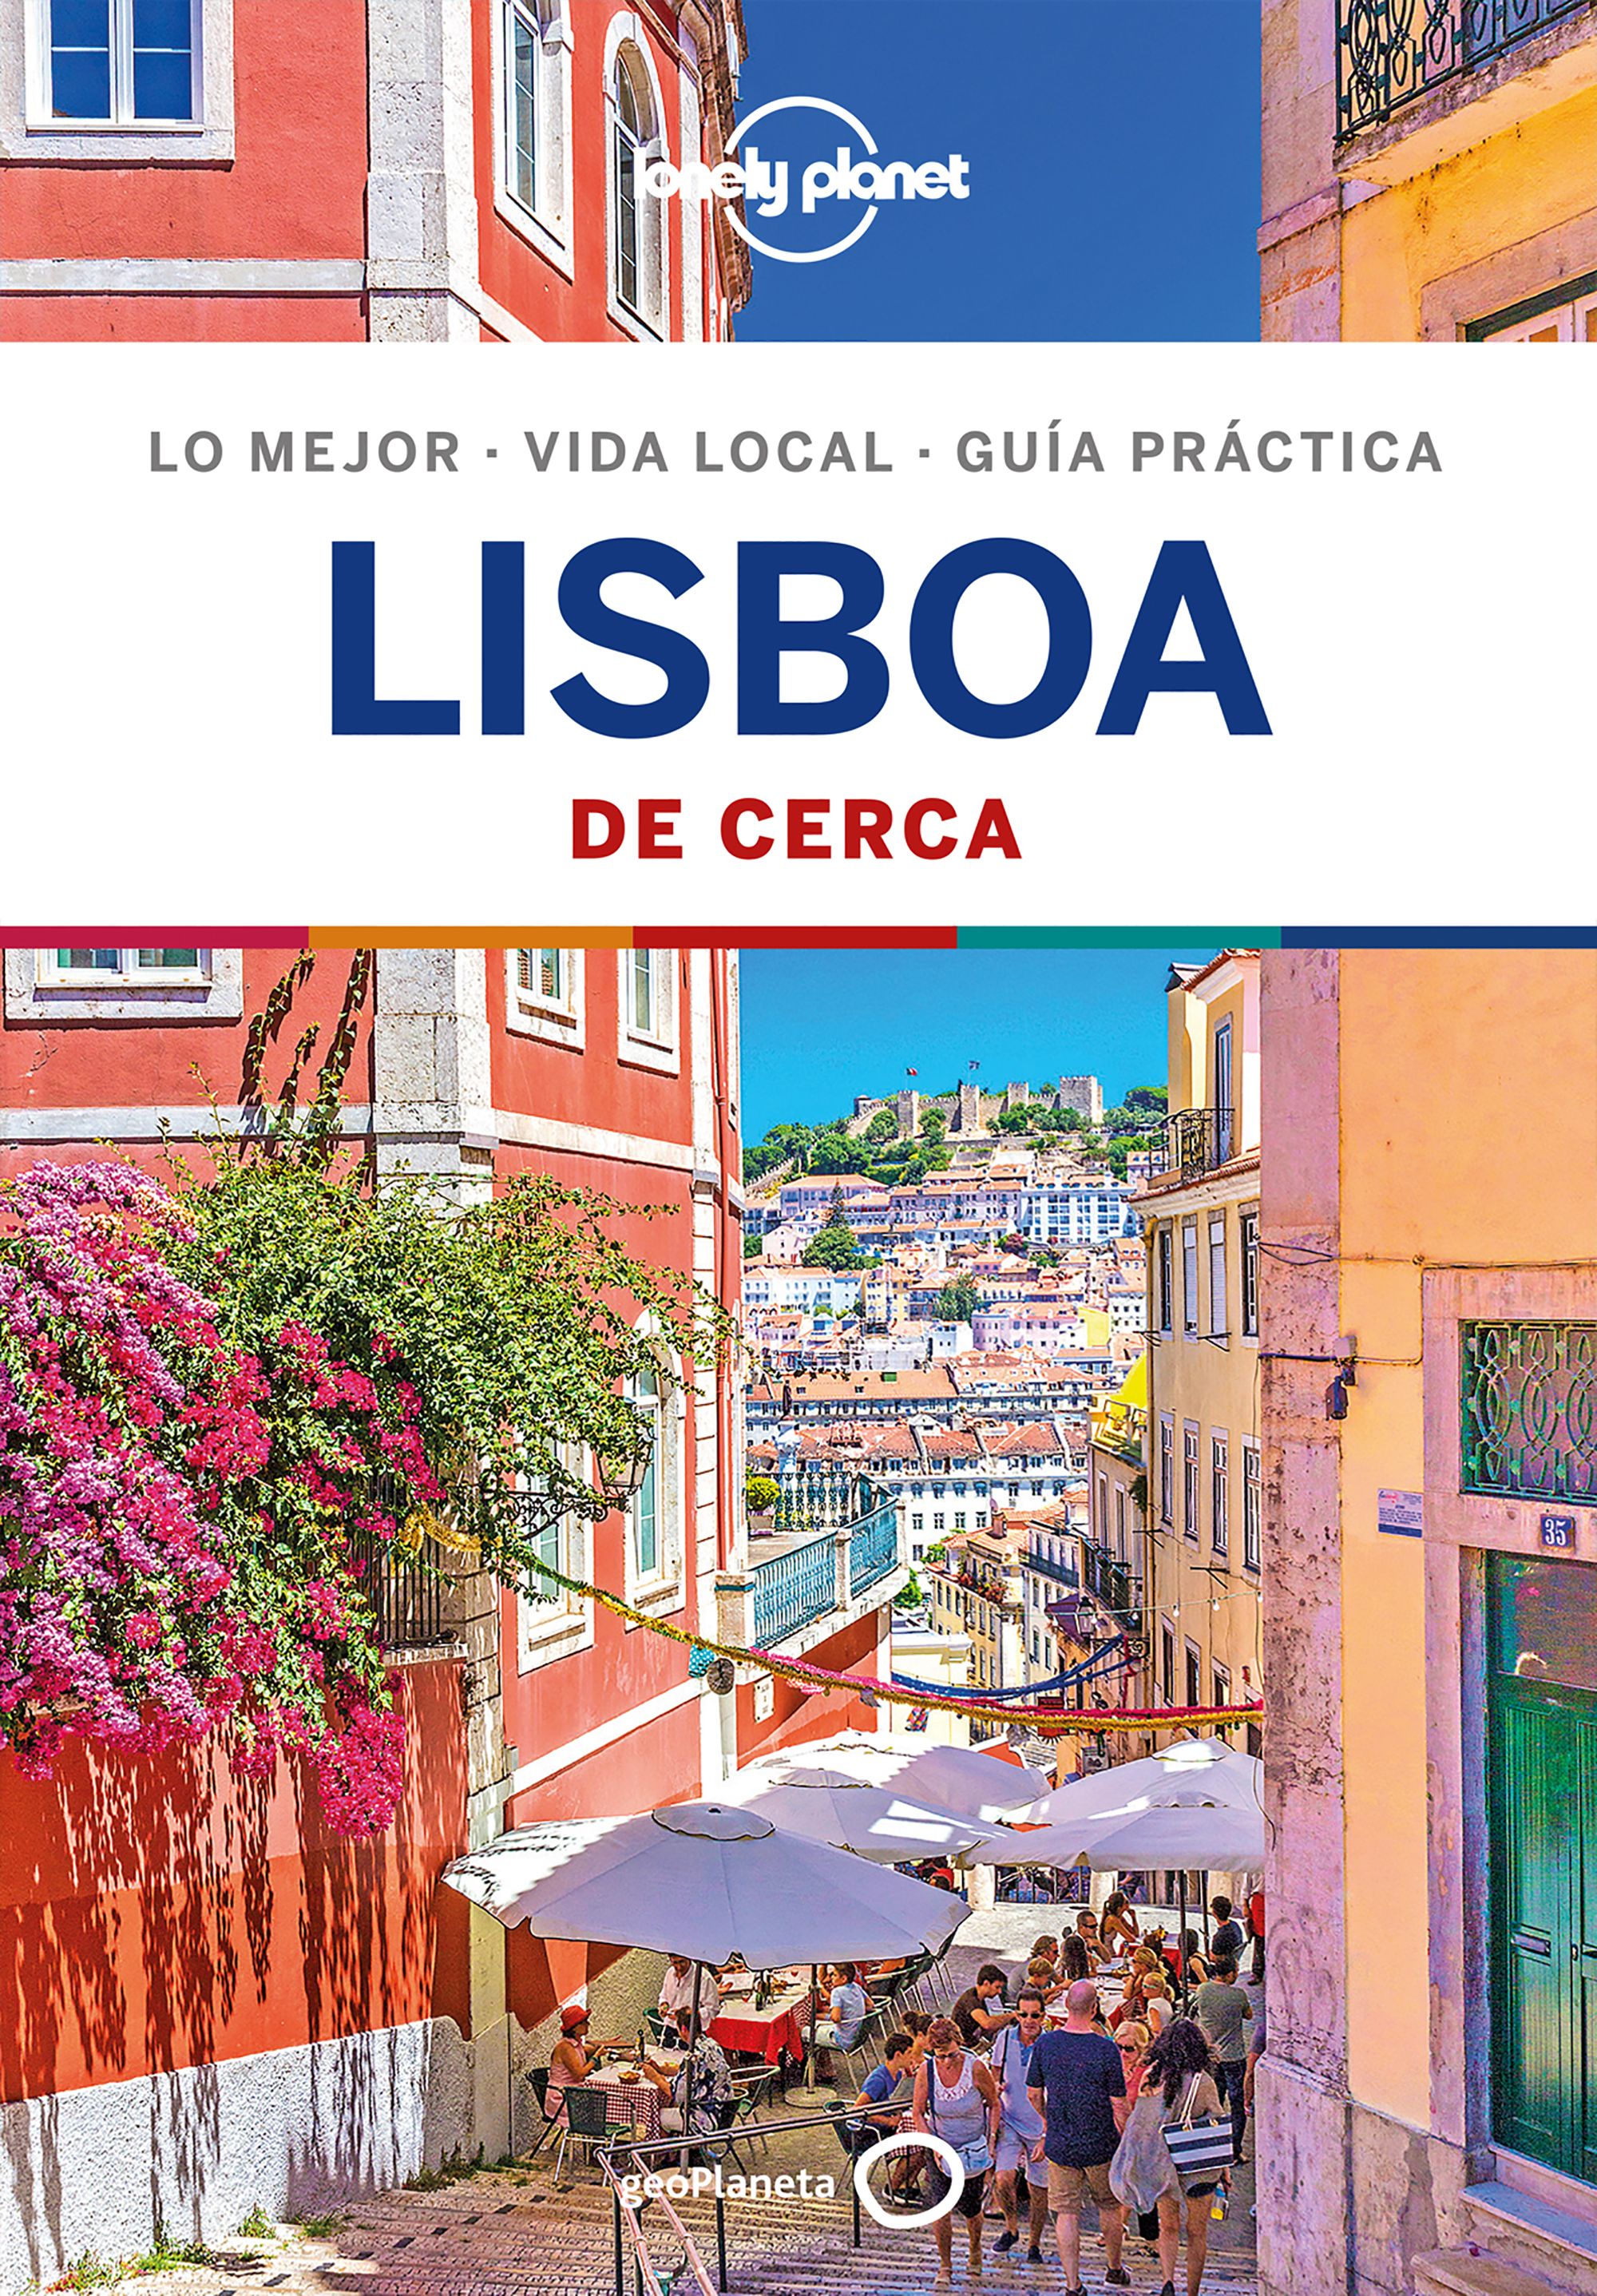 Guía Lisboa De cerca 4